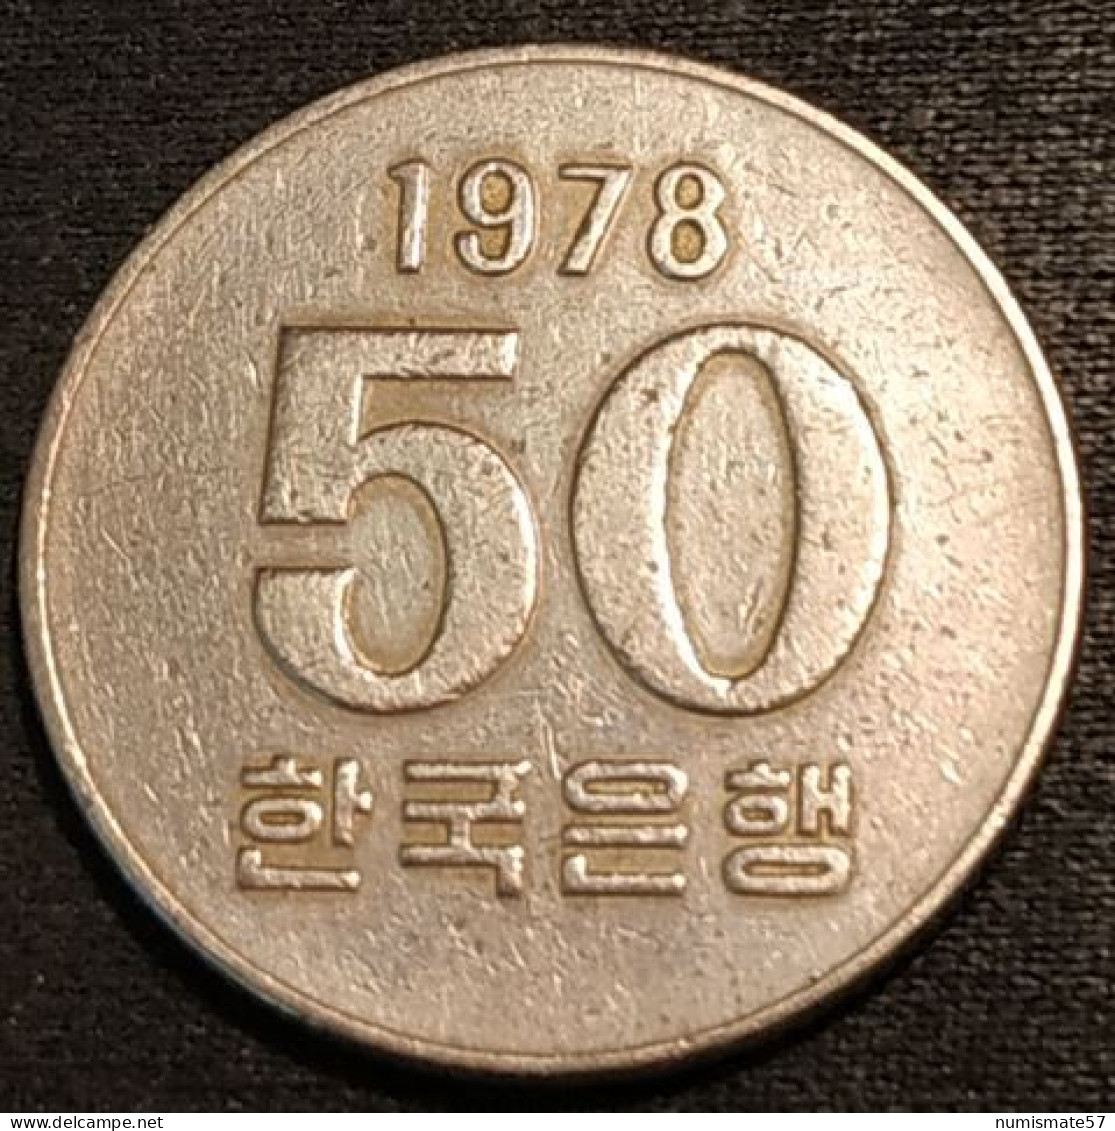 COREE DU SUD - SOUTH KOREA - 50 WON 1978 - KM 20 - Korea, South